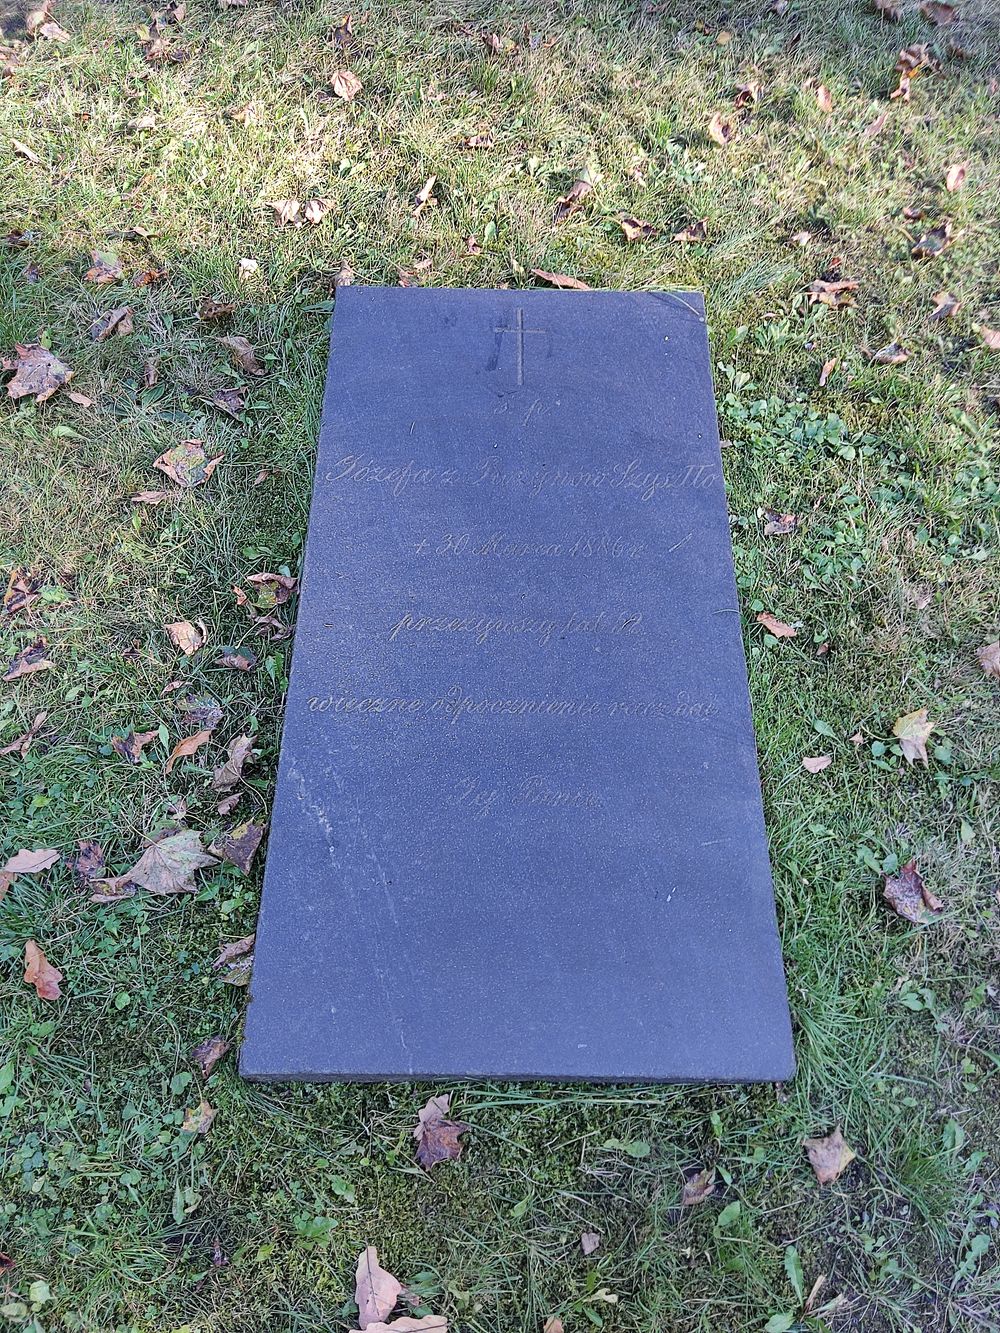 Tombstone of Józefa Szyszło